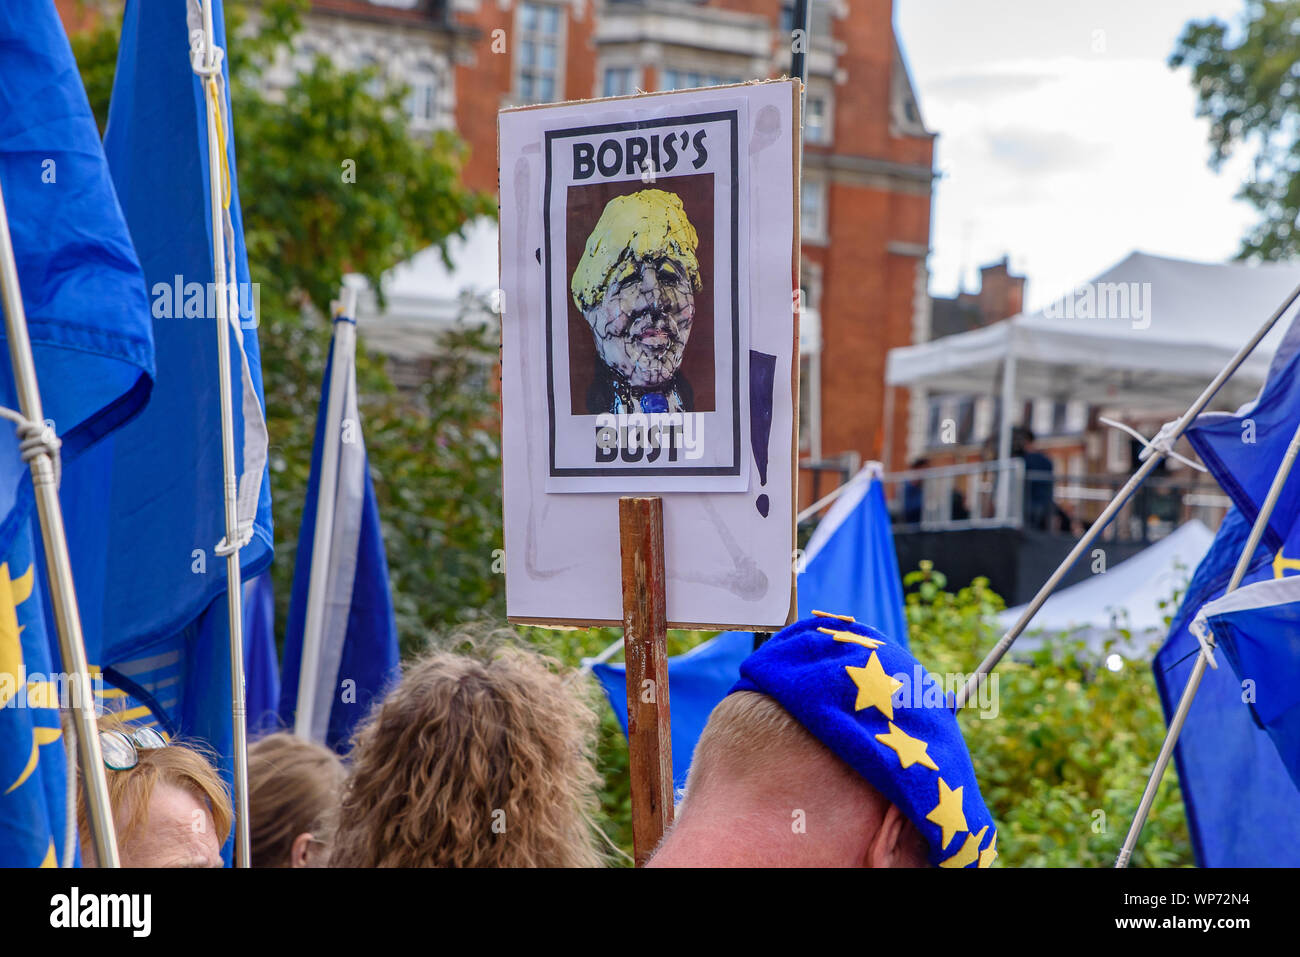 Las personas que protestaban contra la no-deal Brexit, Boris Johnson, el Primer Ministro del Reino Unido, y el gobierno del Reino Unido en Parliament Square, Londres Foto de stock